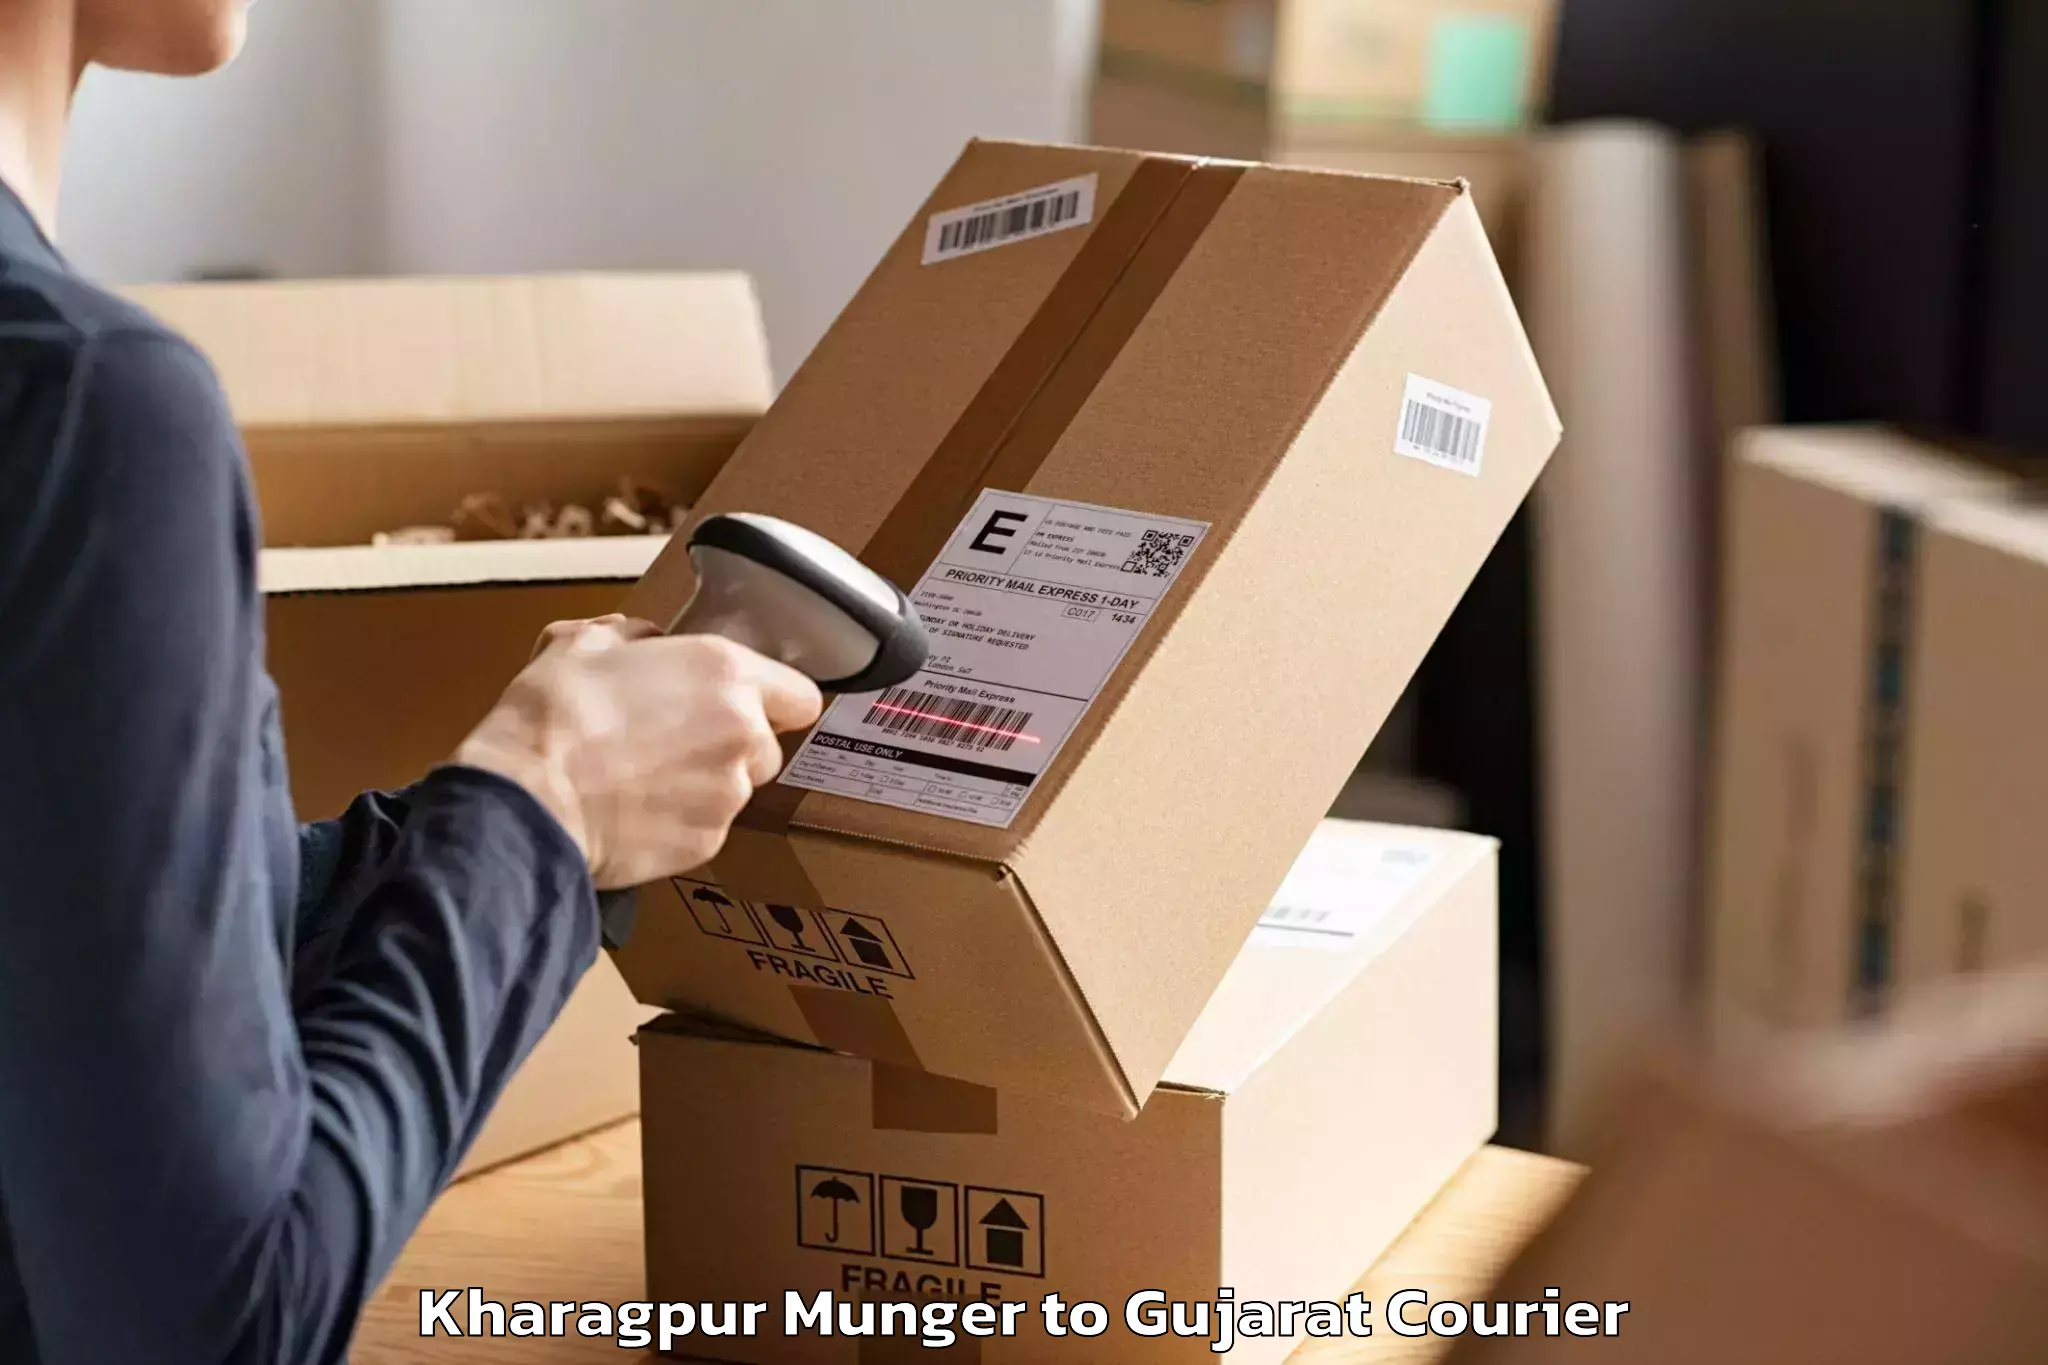 Skilled furniture transporters Kharagpur Munger to Harij